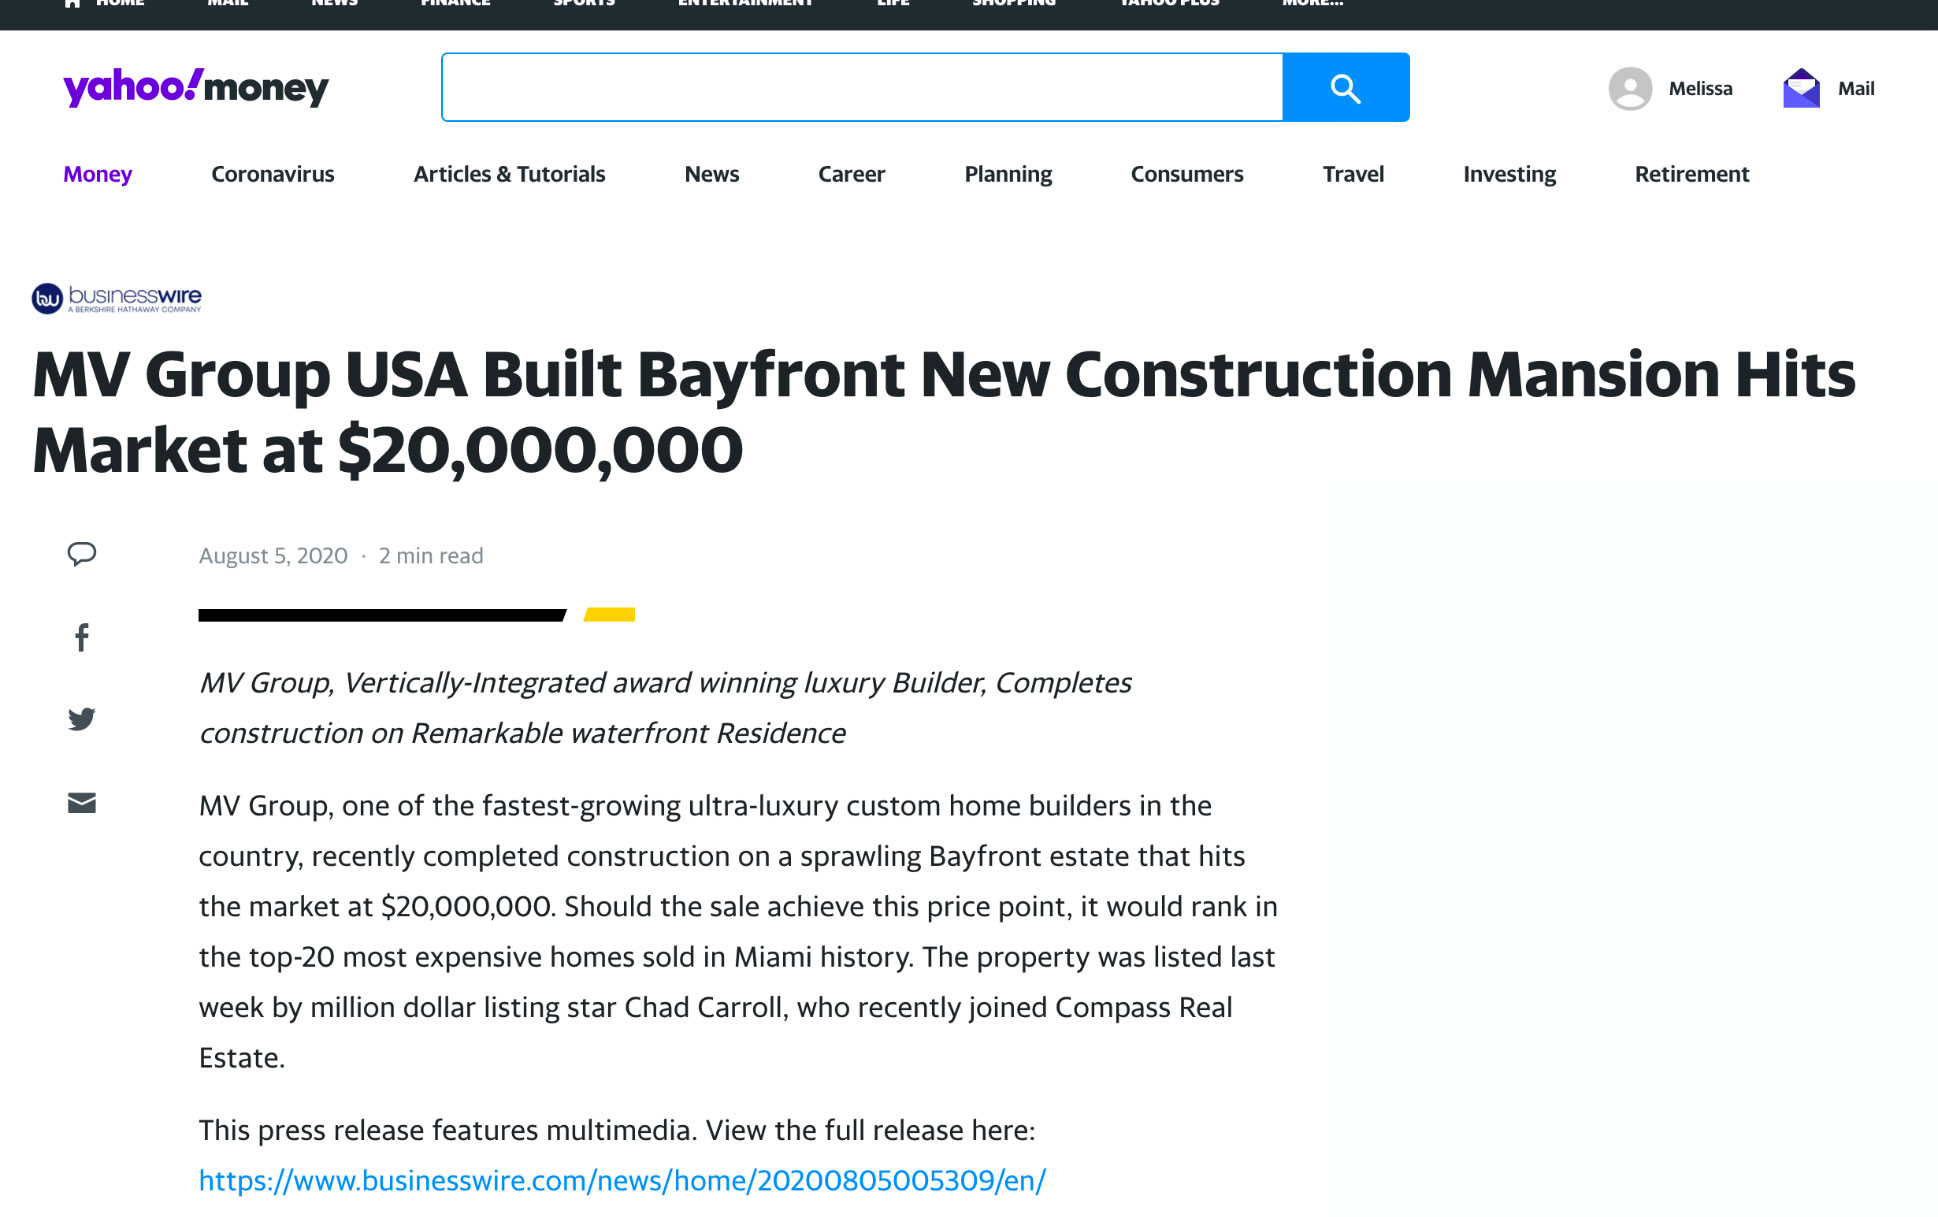 Yahoo – MV Group Usa Built Bayfront New Construction Mansion Hits Market at $20,000,000